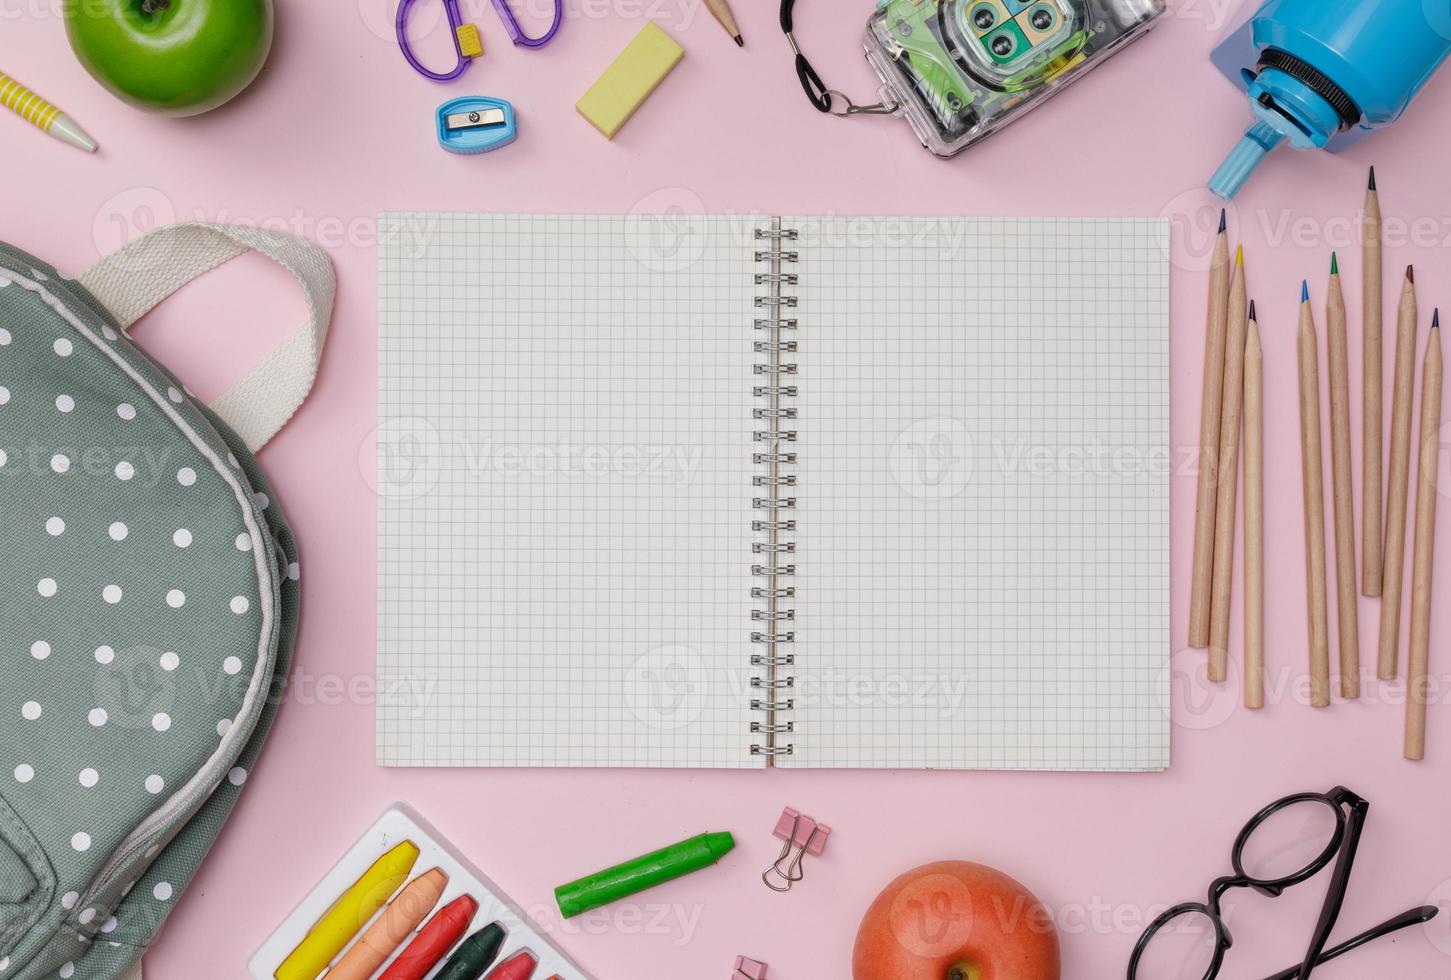 flatlay criativo de mesa de educação rosa com mochila, livros de estudante, sapatos, giz de cera colorido, óculos, espaço vazio isolado no fundo rosa, conceito de educação e volta às aulas foto